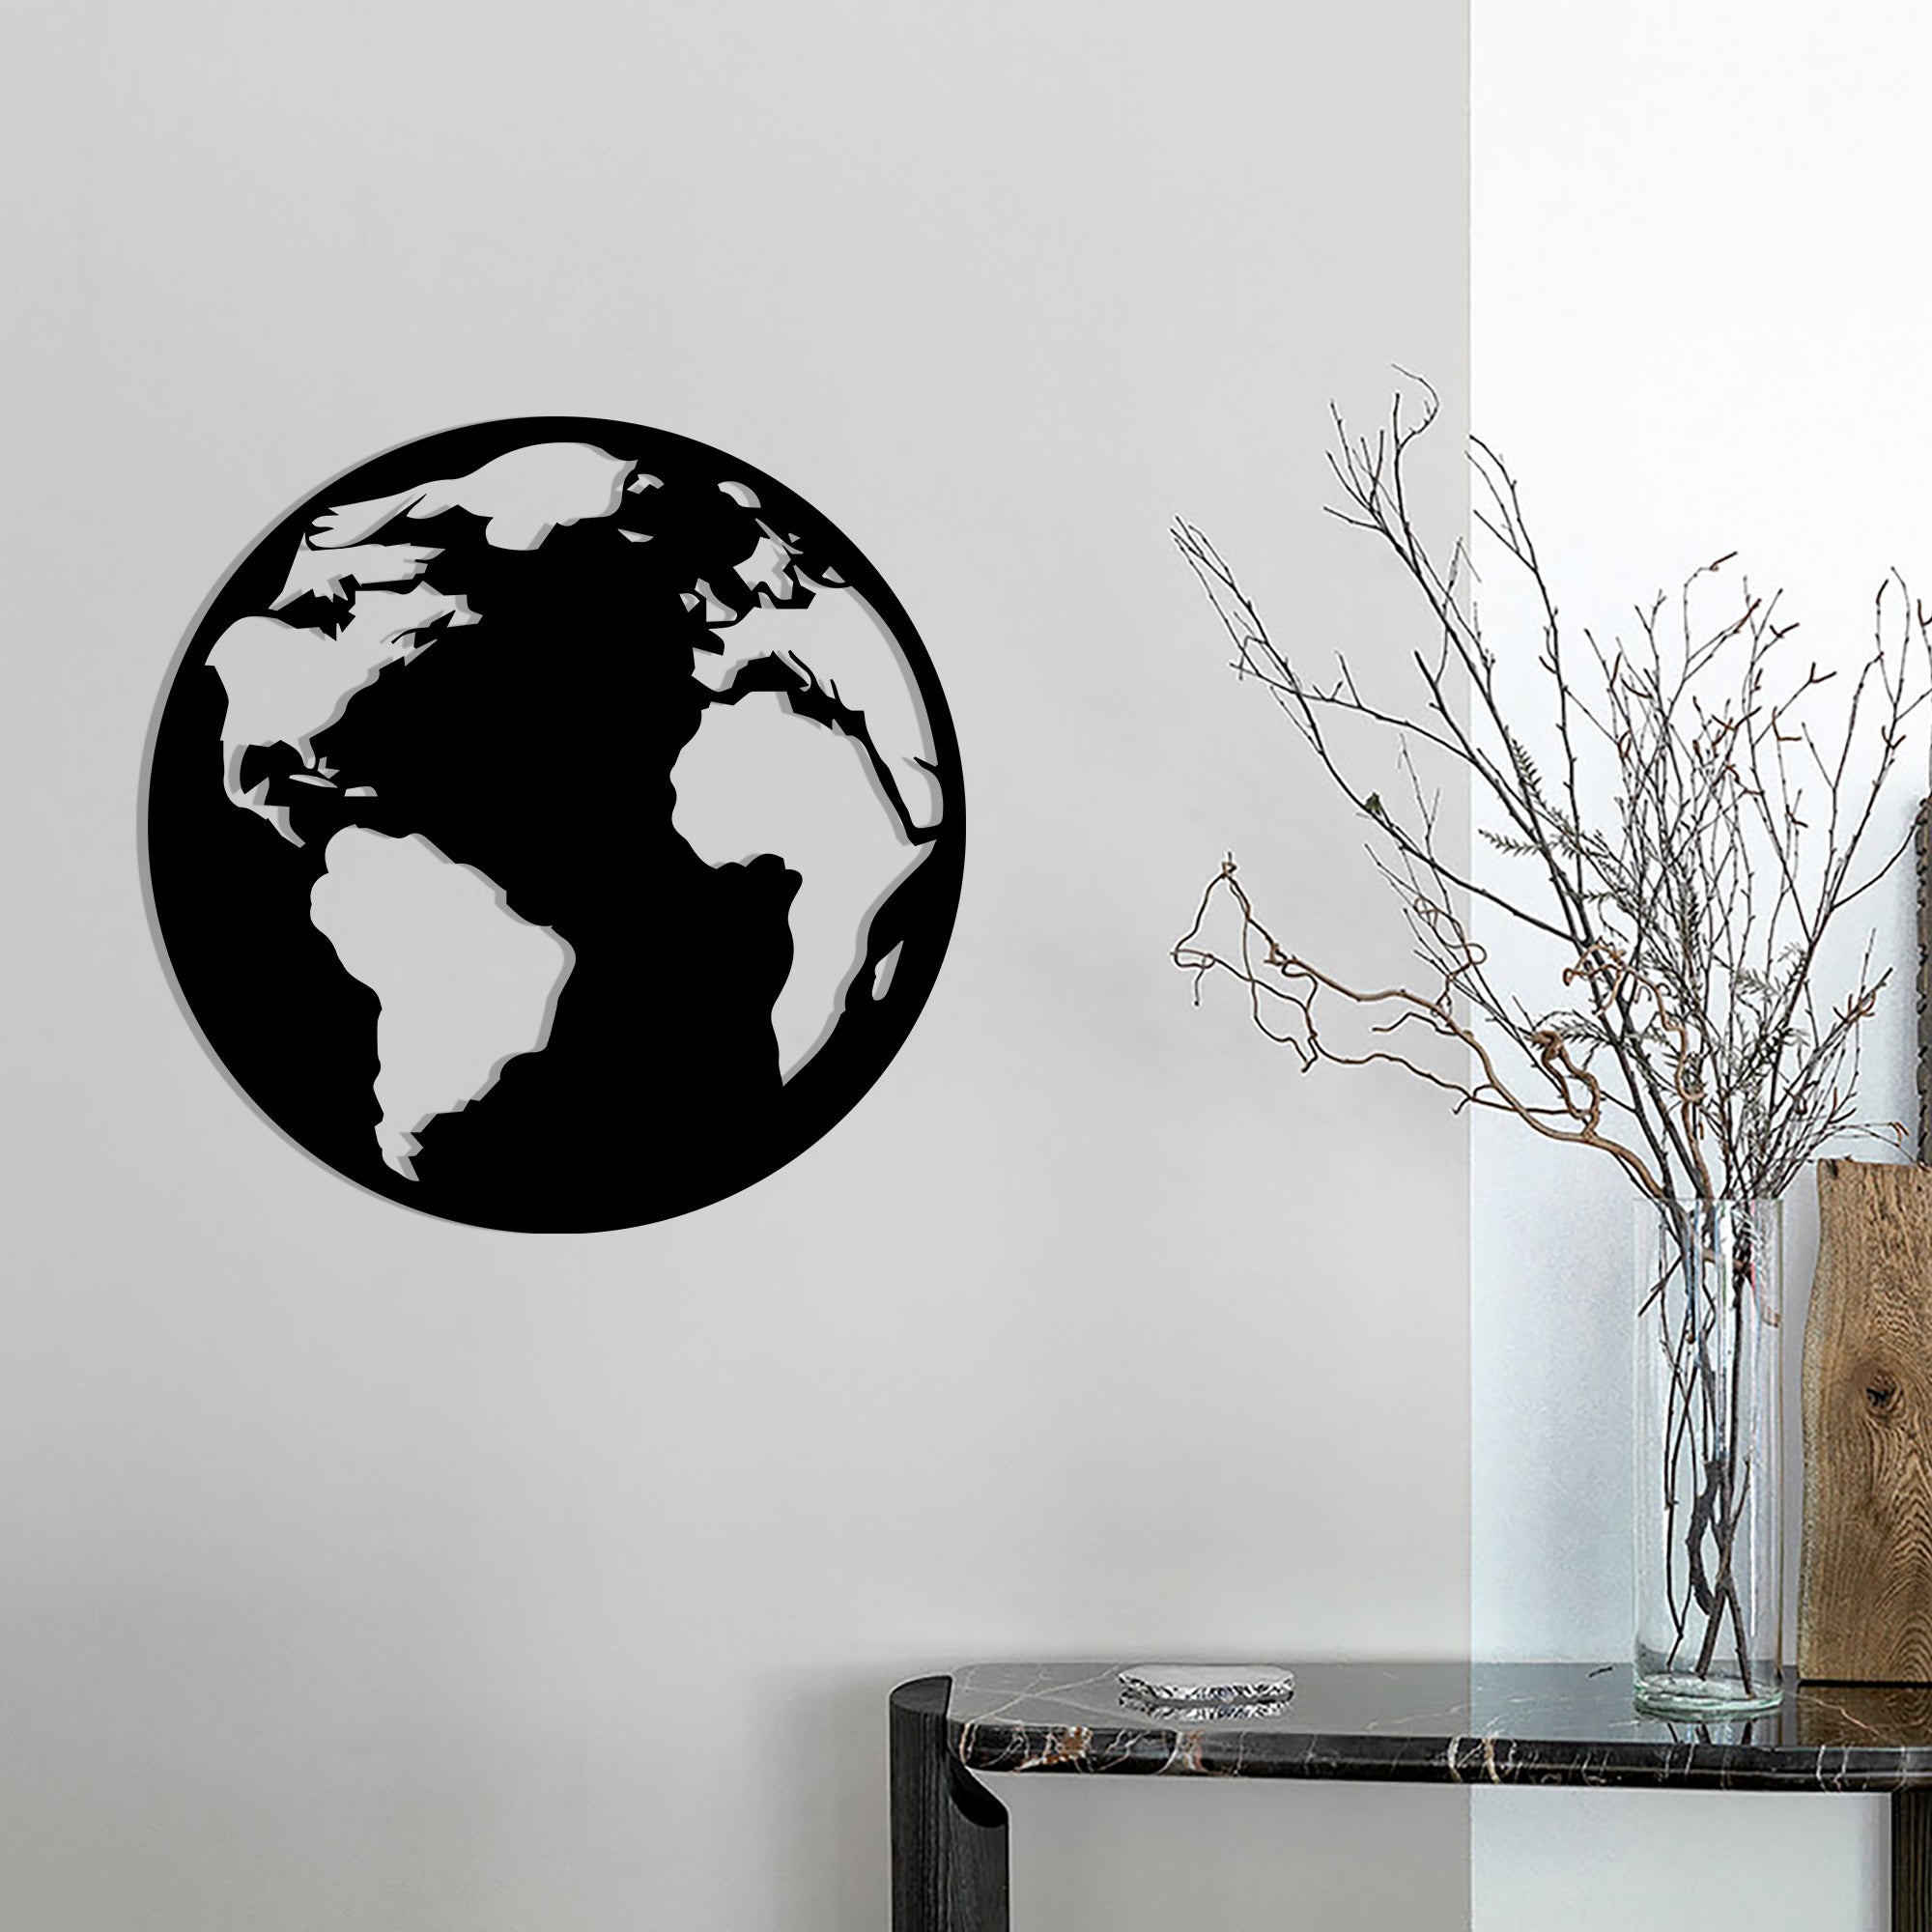 Дизайнерская деревянная картина "Earth"  (50 x 50 см)